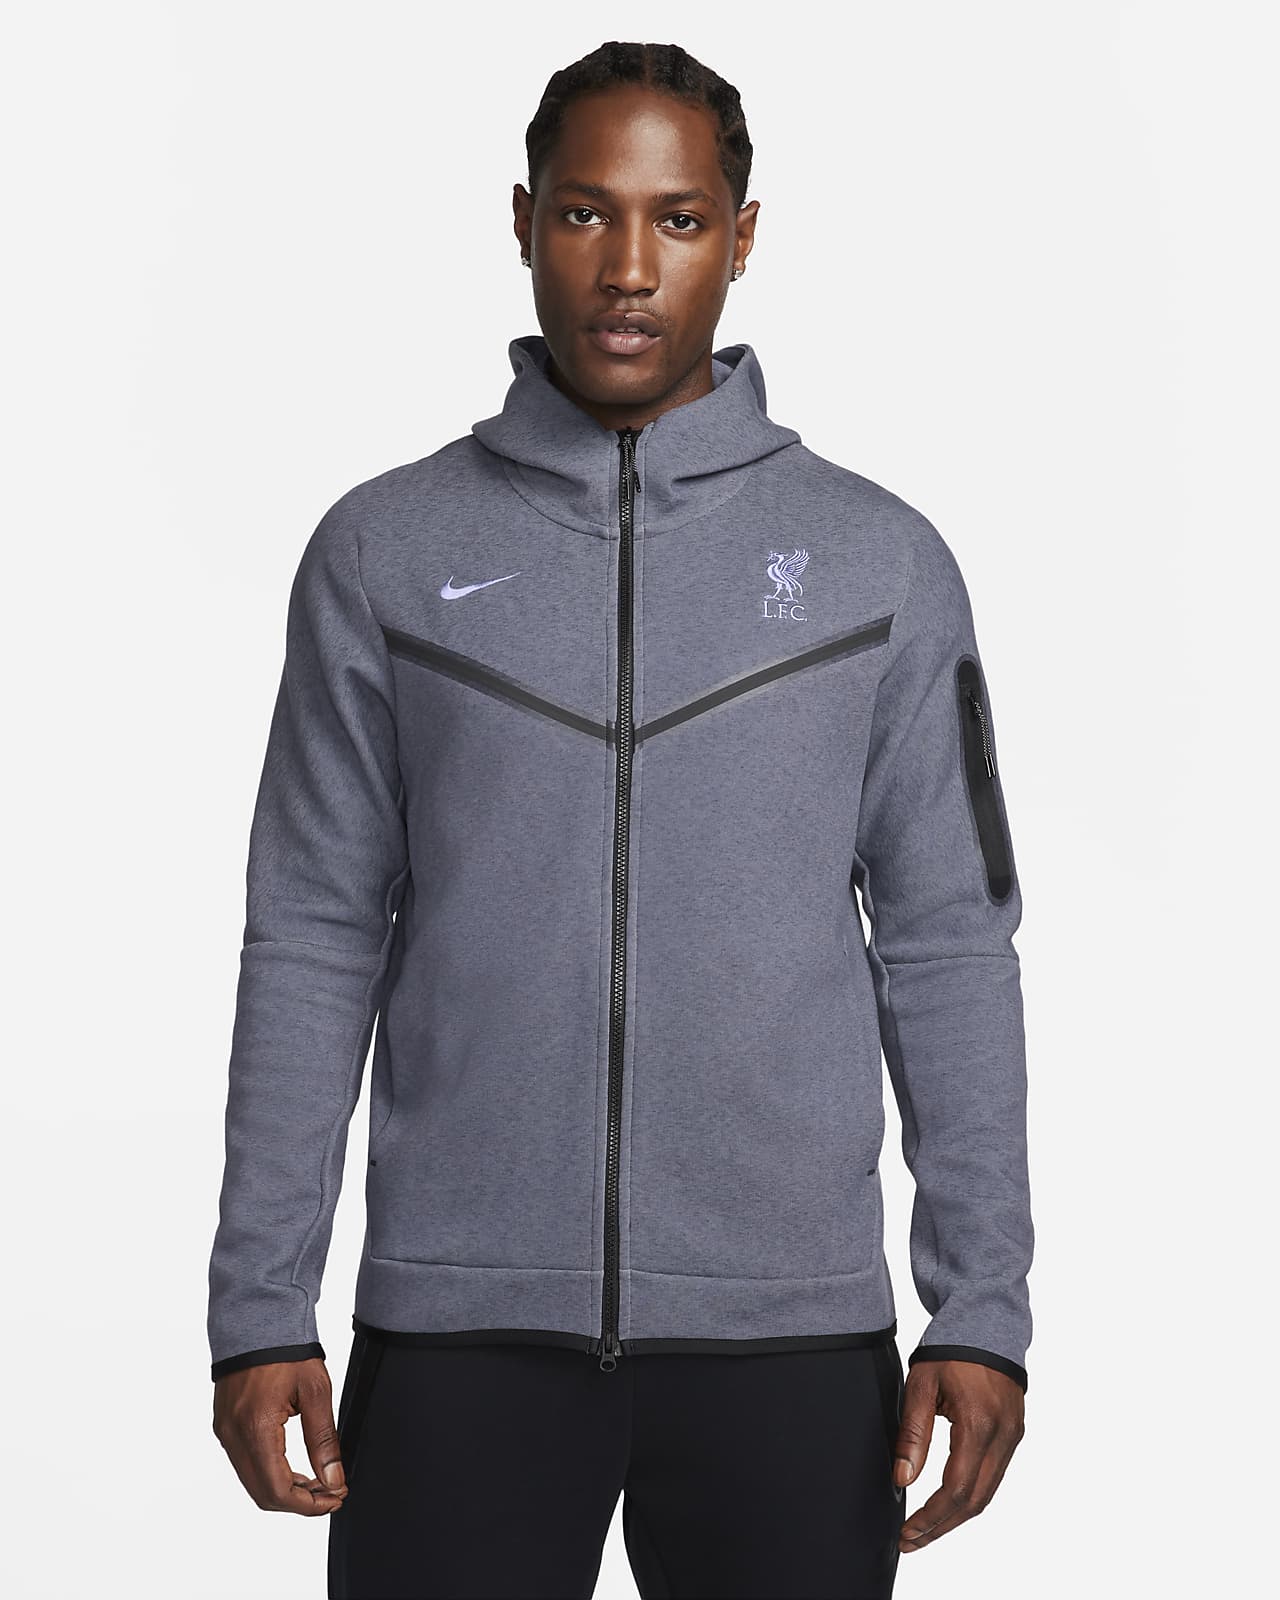 Pánská třetí mikina Nike Football Liverpool FC Tech Fleece Windrunner s kapucí a zipem po celé délce